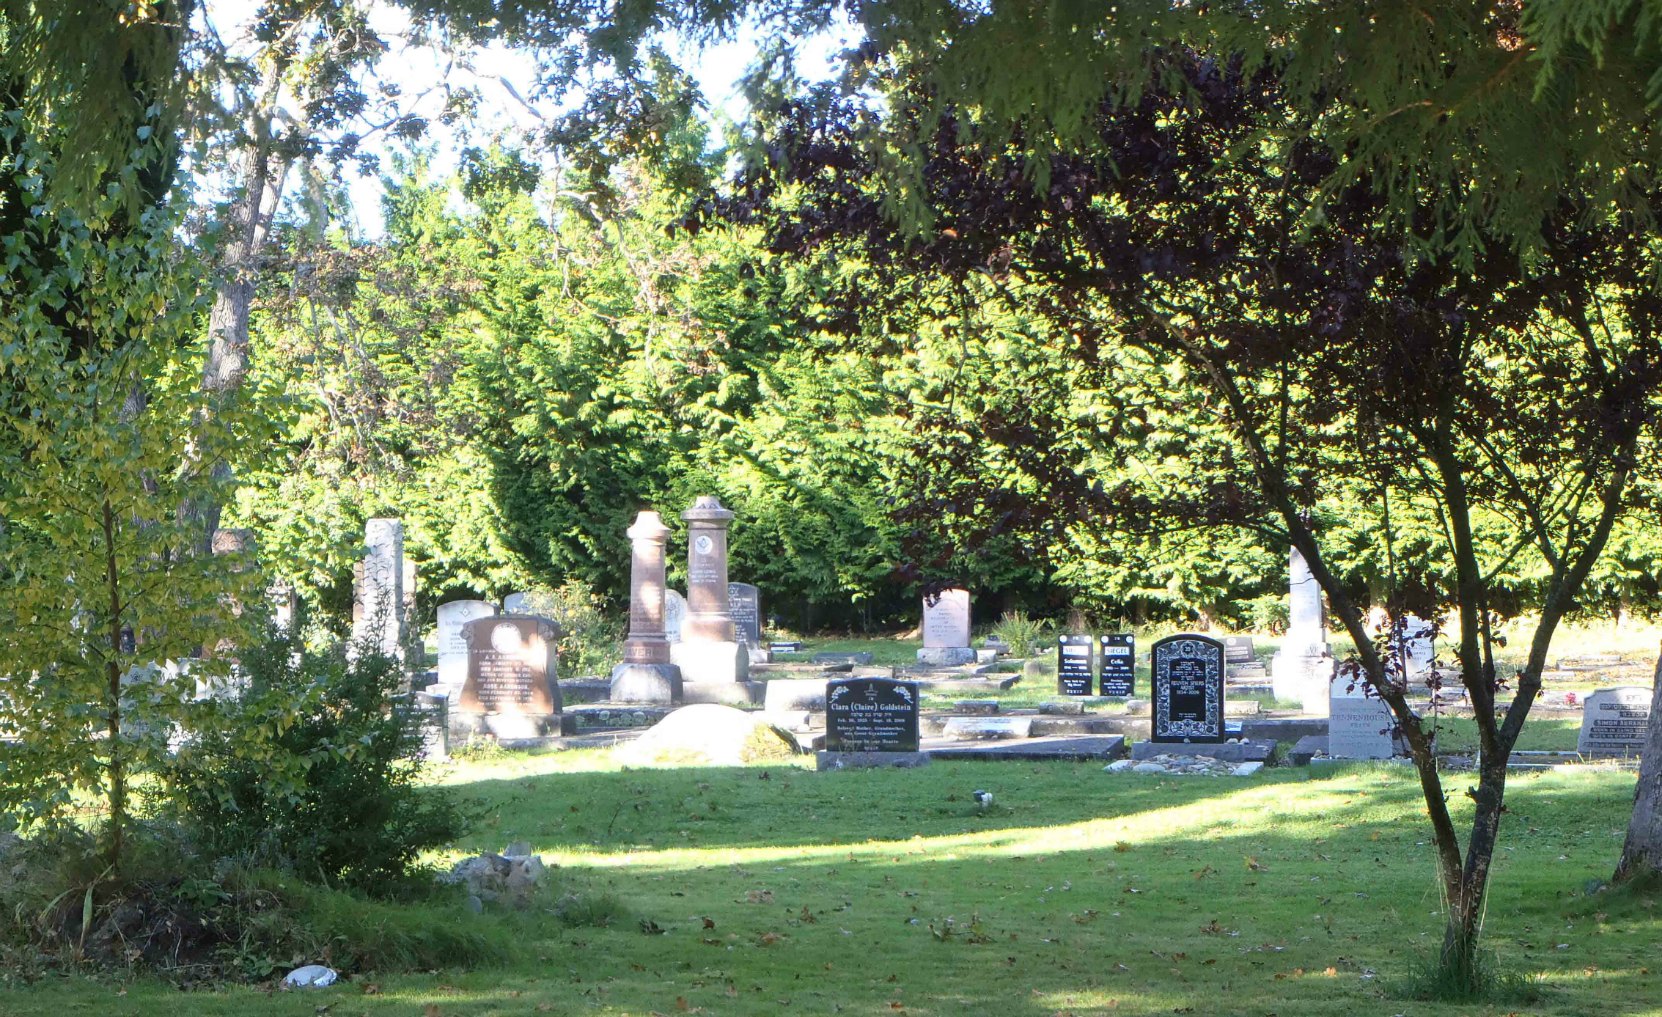 Victoria Jewish Cemetery